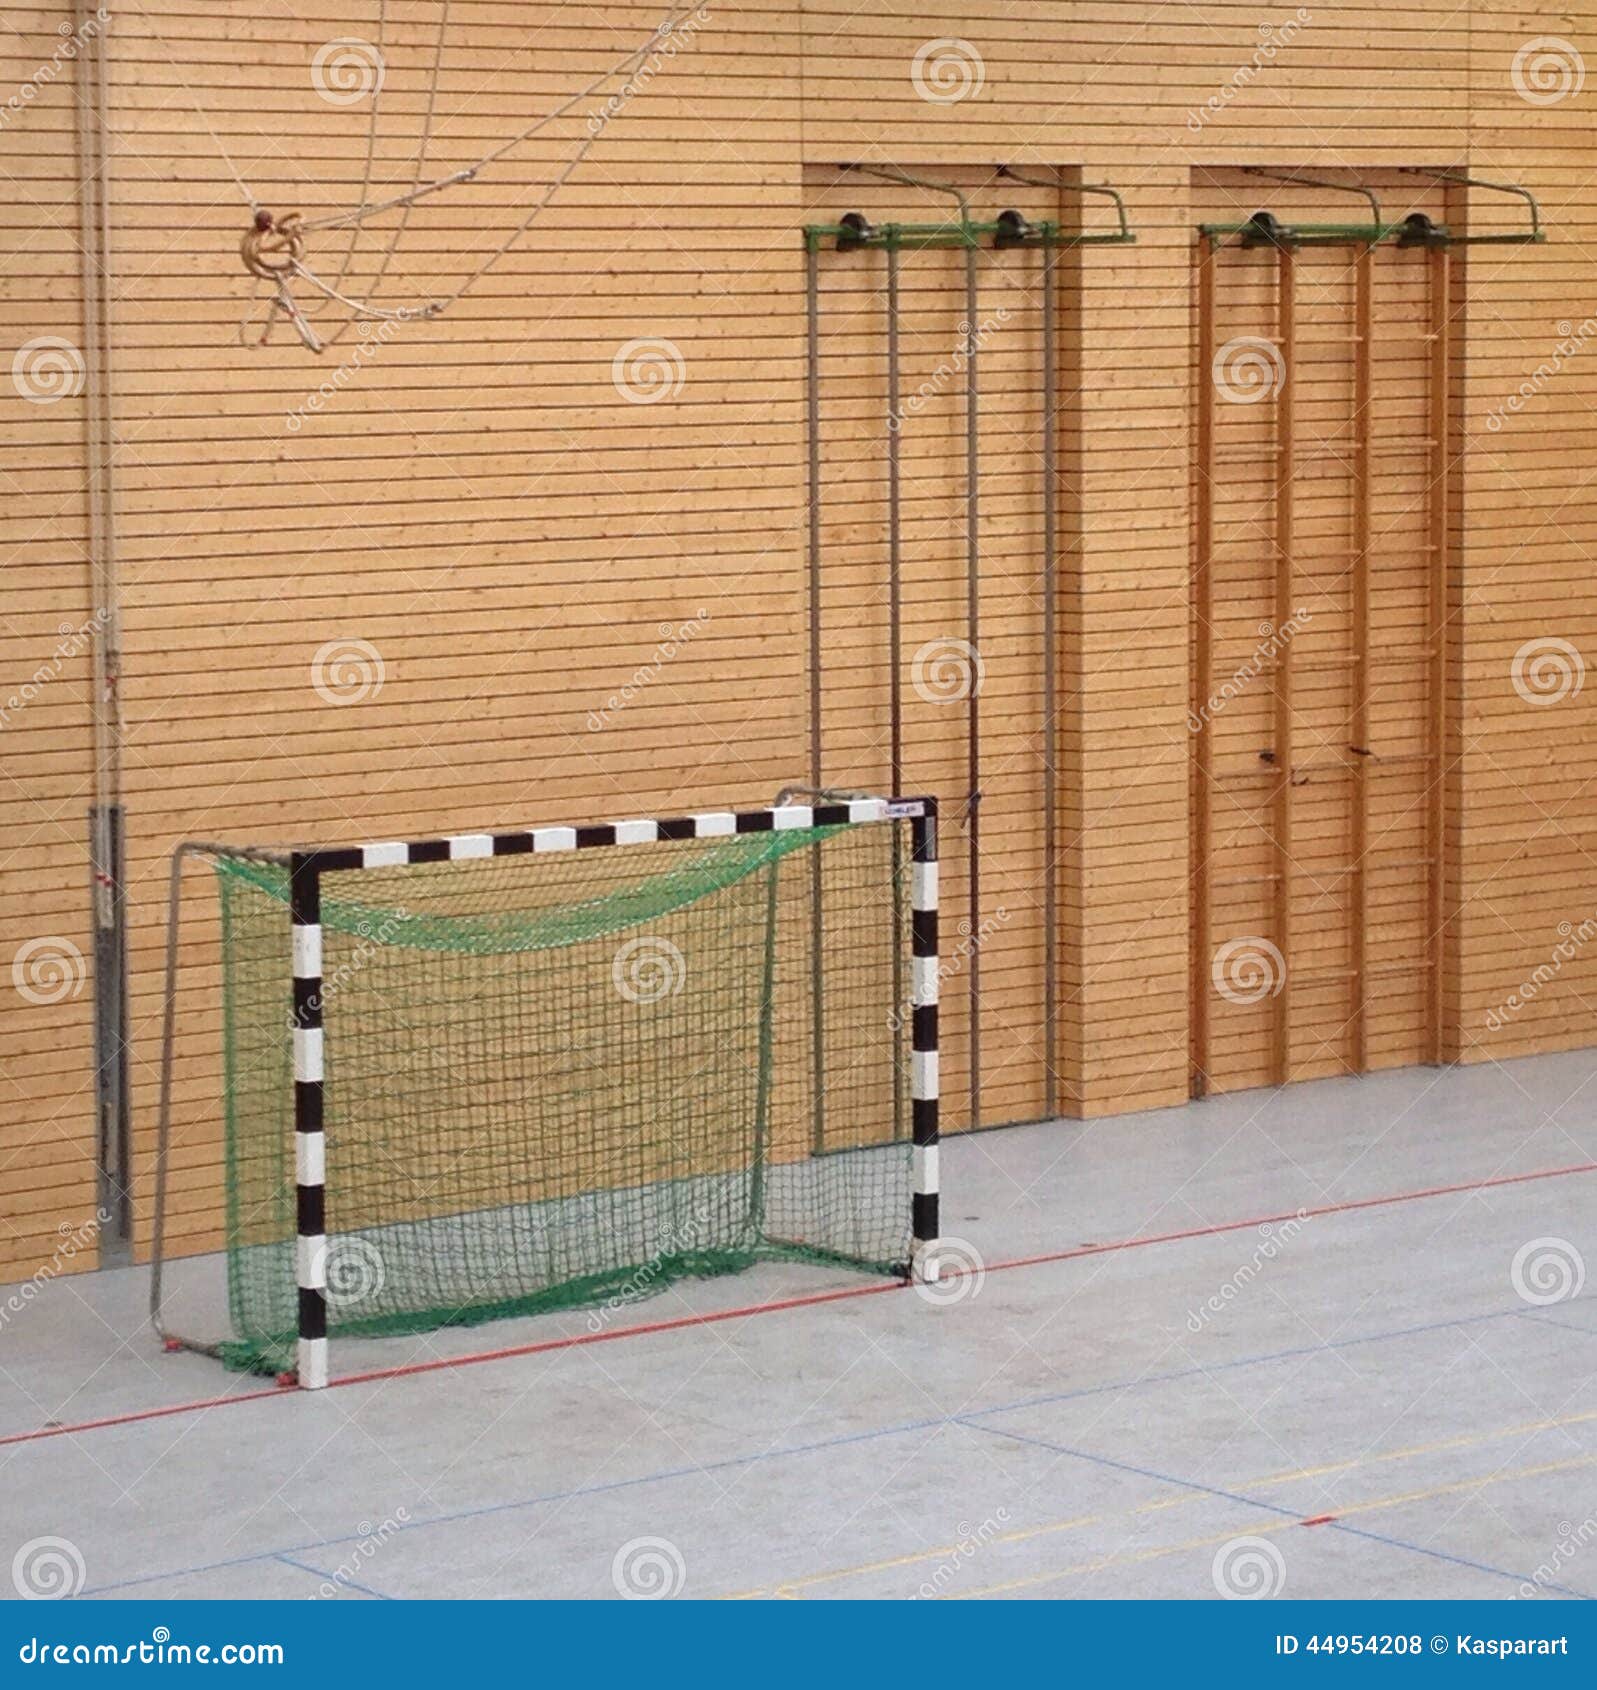 Empty Goal Handball